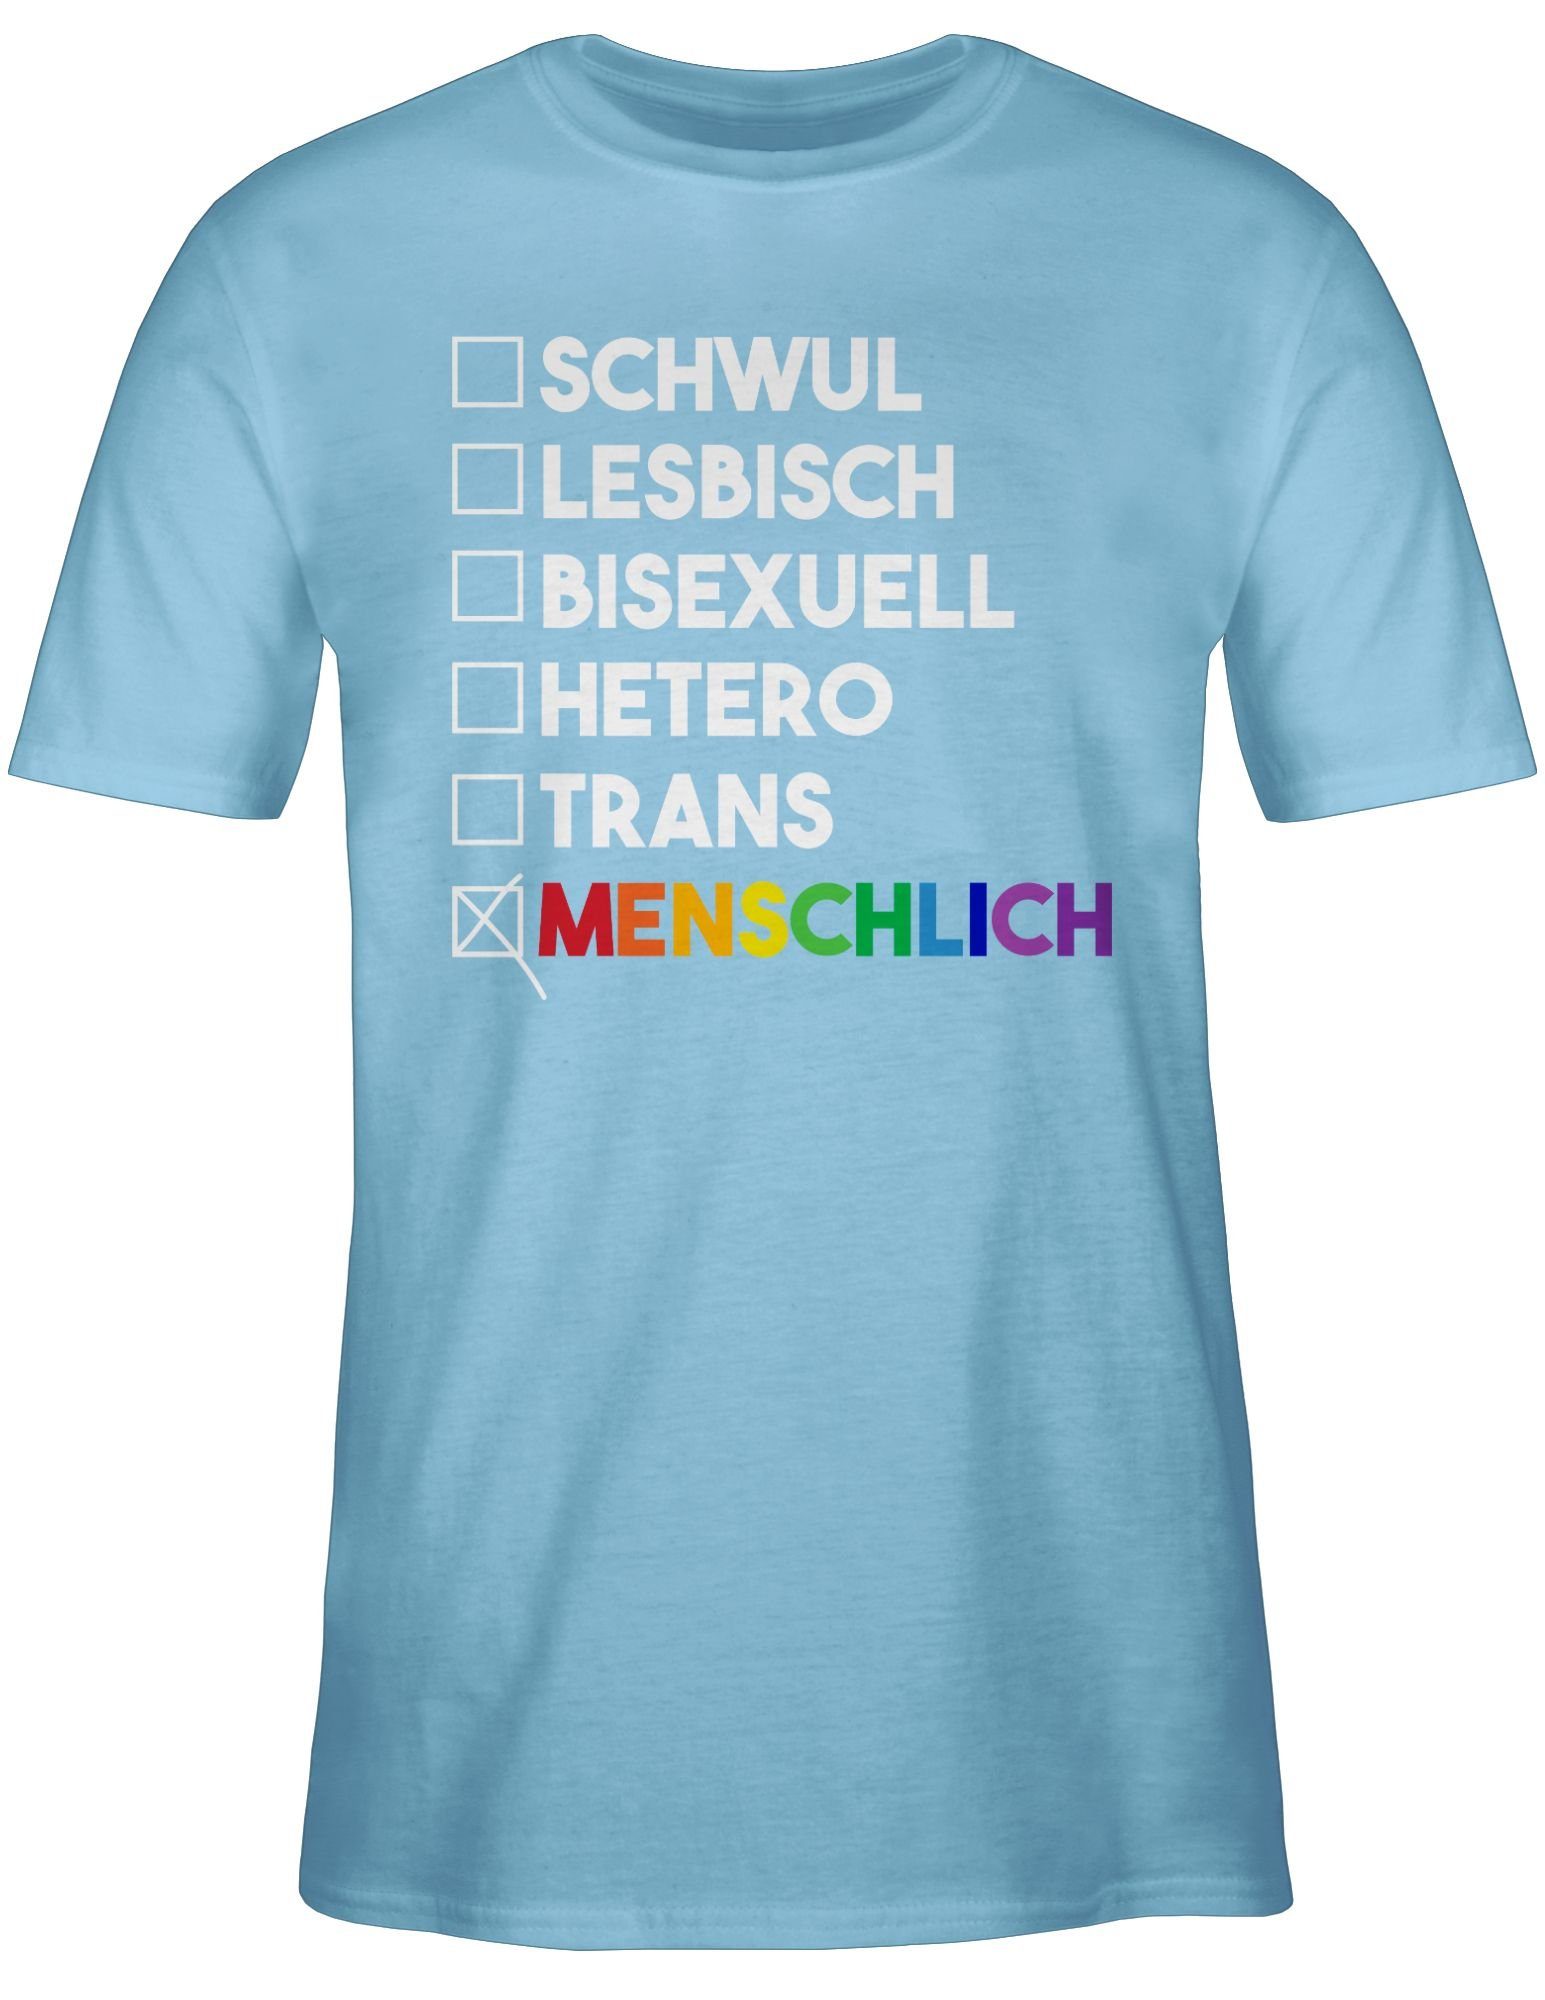 Shirtracer T-Shirt Wahl weiß - Pride Deine Menschlich - Regenbogen - LGBT - Kleidung Hellblau 03